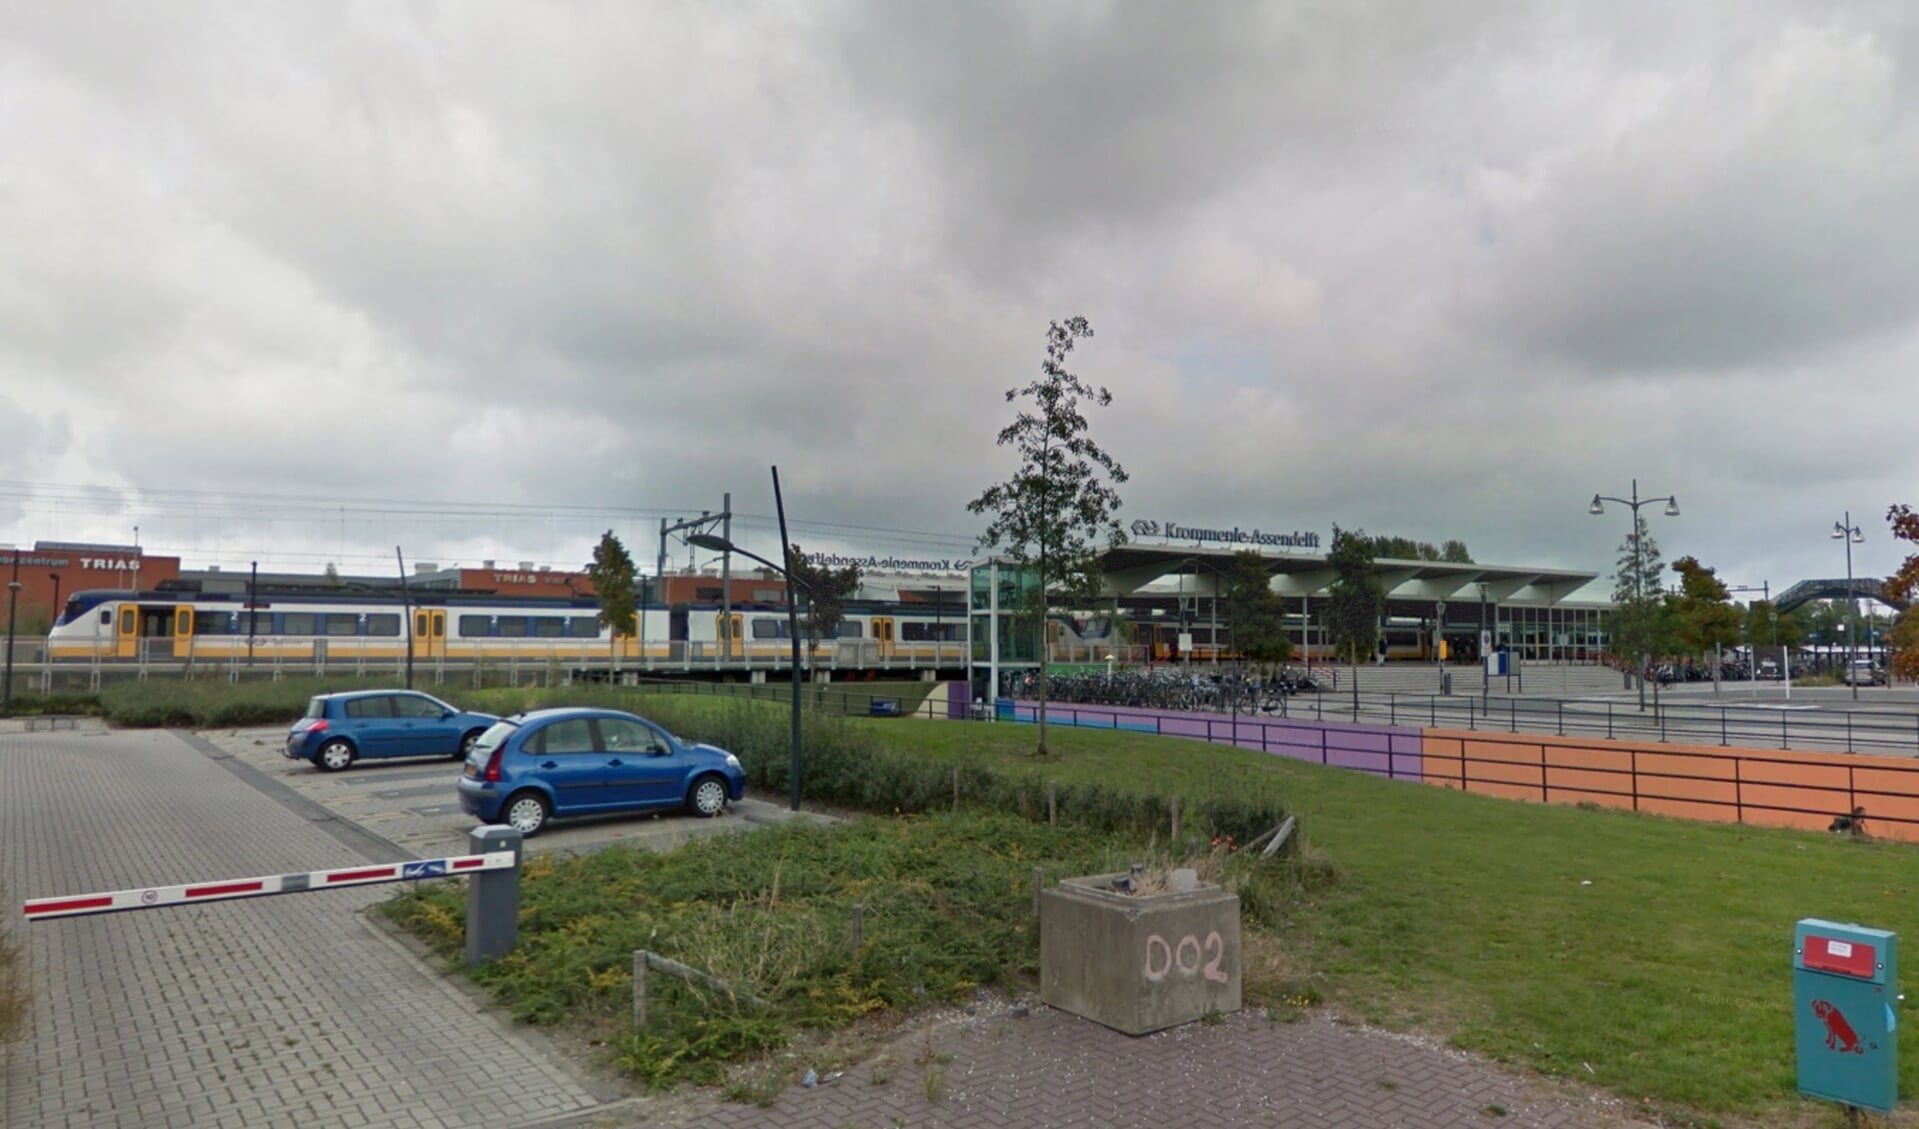 Burgemeester Jan Hamming heeft besloten om de omgeving van treinstation Krommenie-Assendelft aan te wijzen als tijdelijk cameratoezichtsgebied.